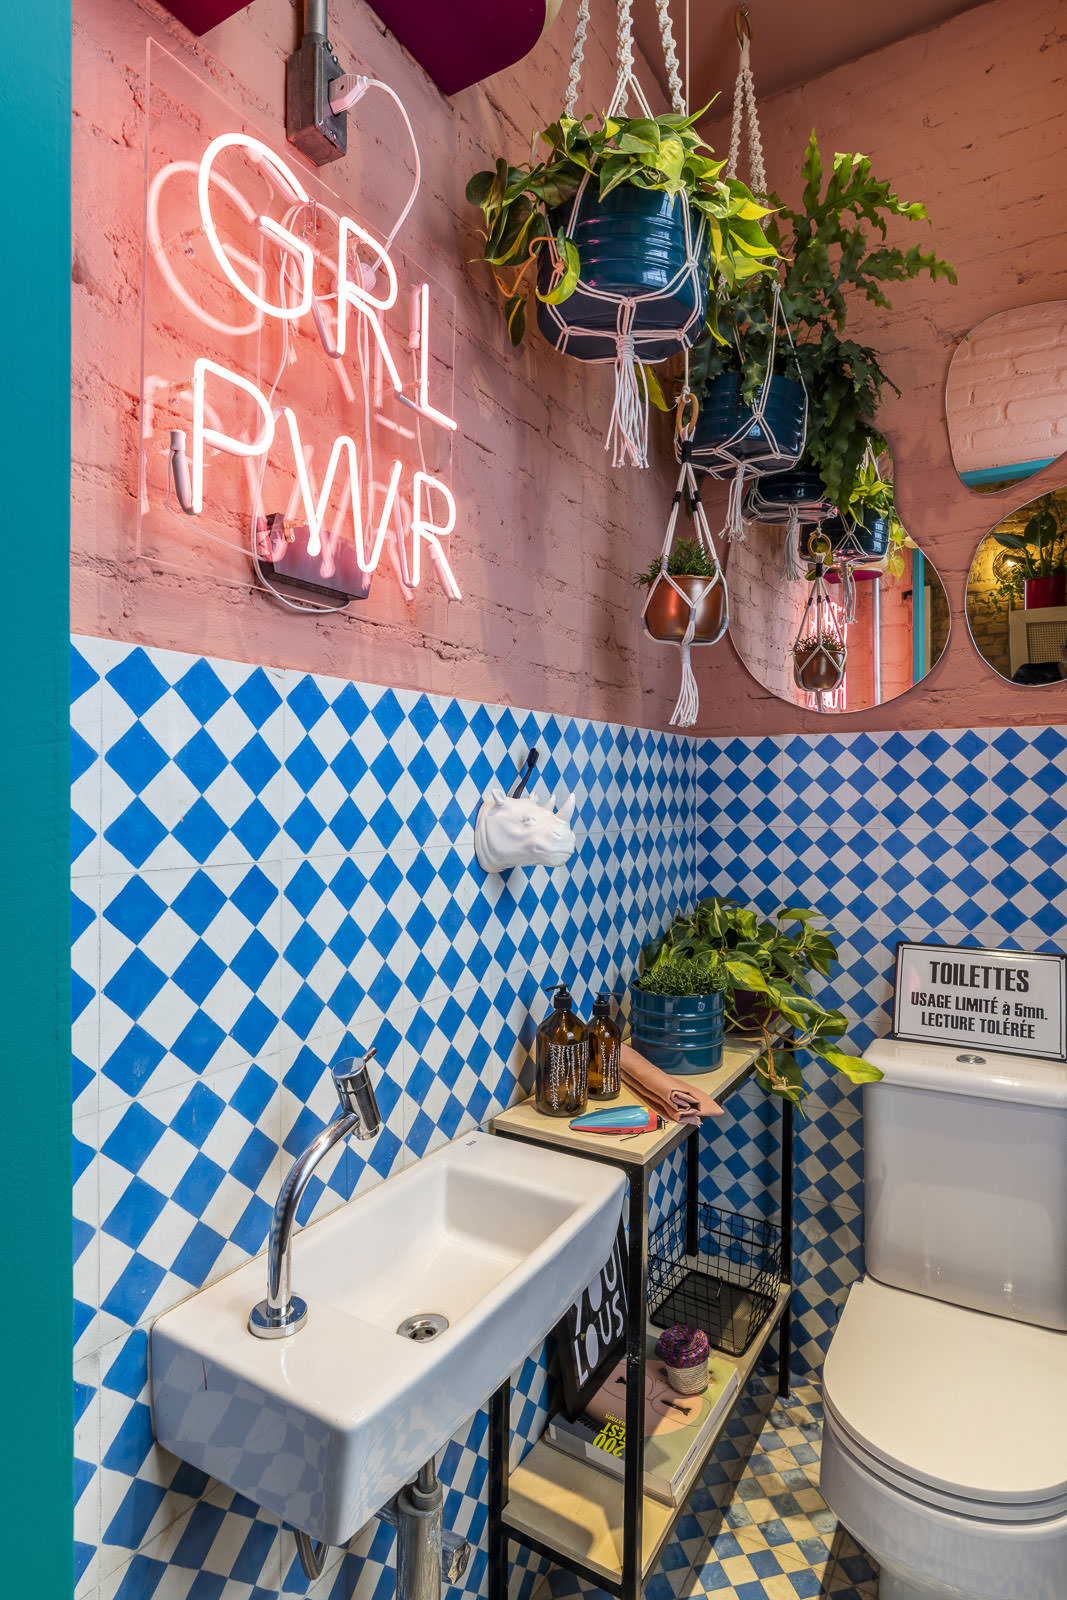 salle de bain vintage colorée mur carrelage bleu neon rose plantes suspendues